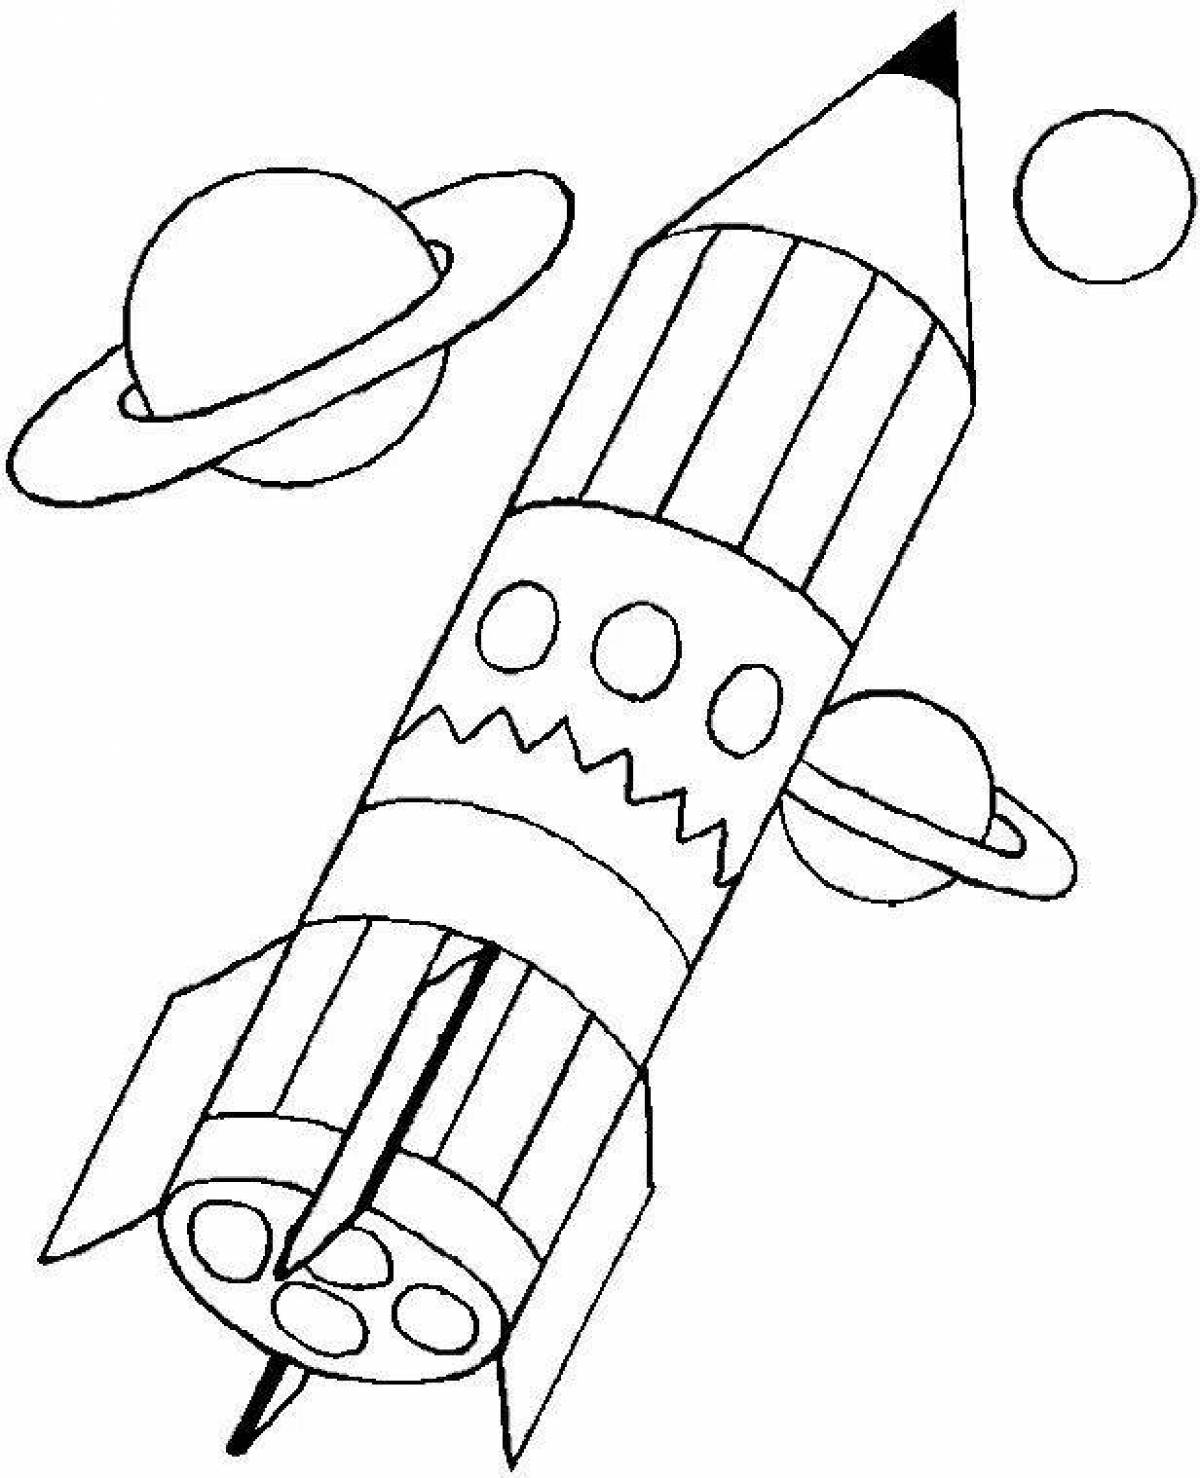 Зымыран раскраска. Ракета раскраска. Ракета раскраска для детей. Космическая ракета раскраска. Ракета эскиз.